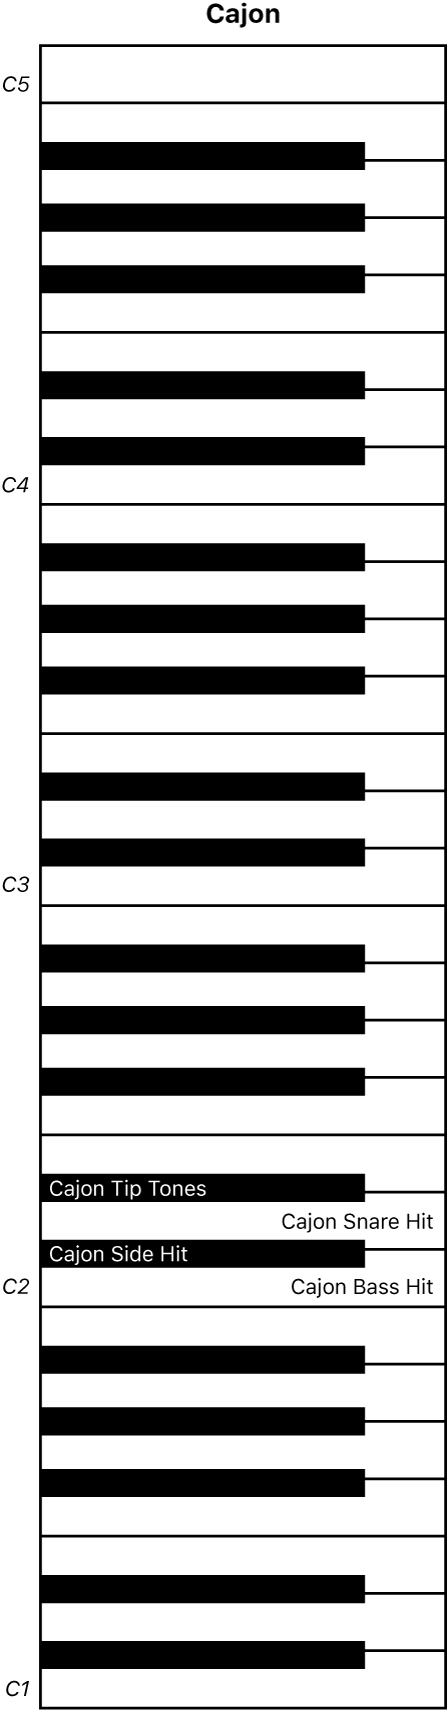 Figură. Harta claviaturii pentru interpretarea Cajon.